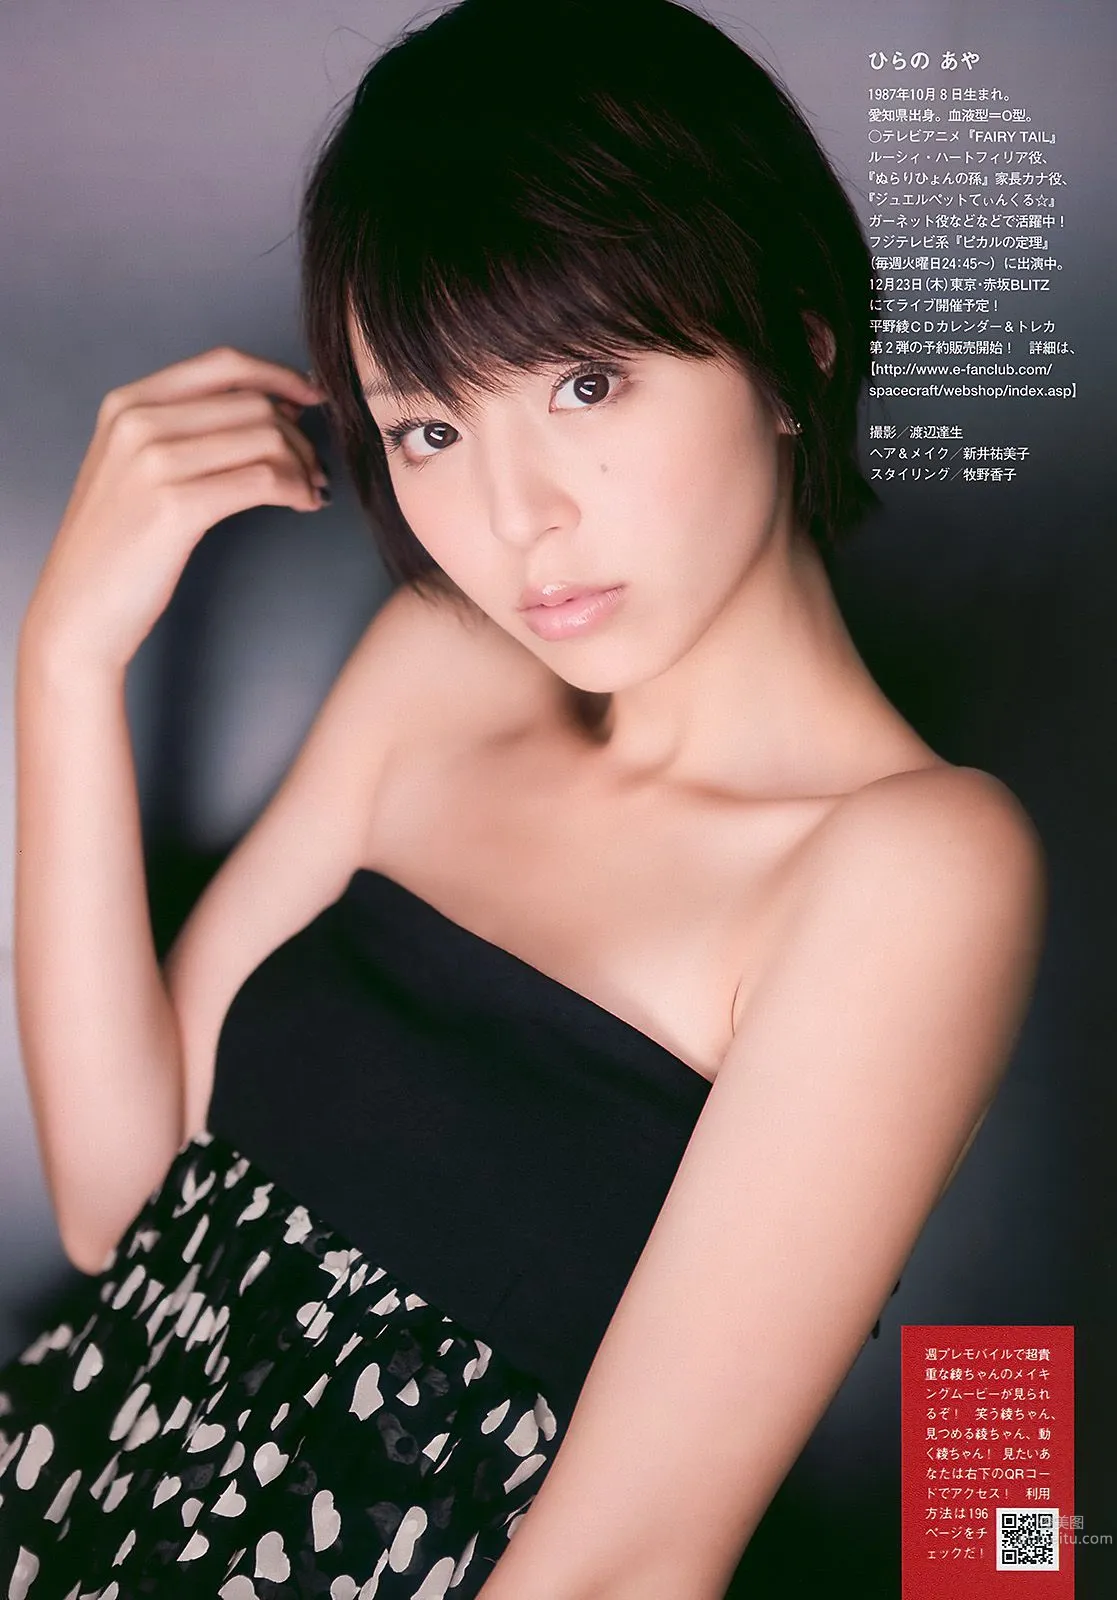 平野綾 AKB48 佐藤寛子 西田麻衣 森崎友紀 Agnes Lum [Weekly Playboy] 2010年No.51 写真杂志7